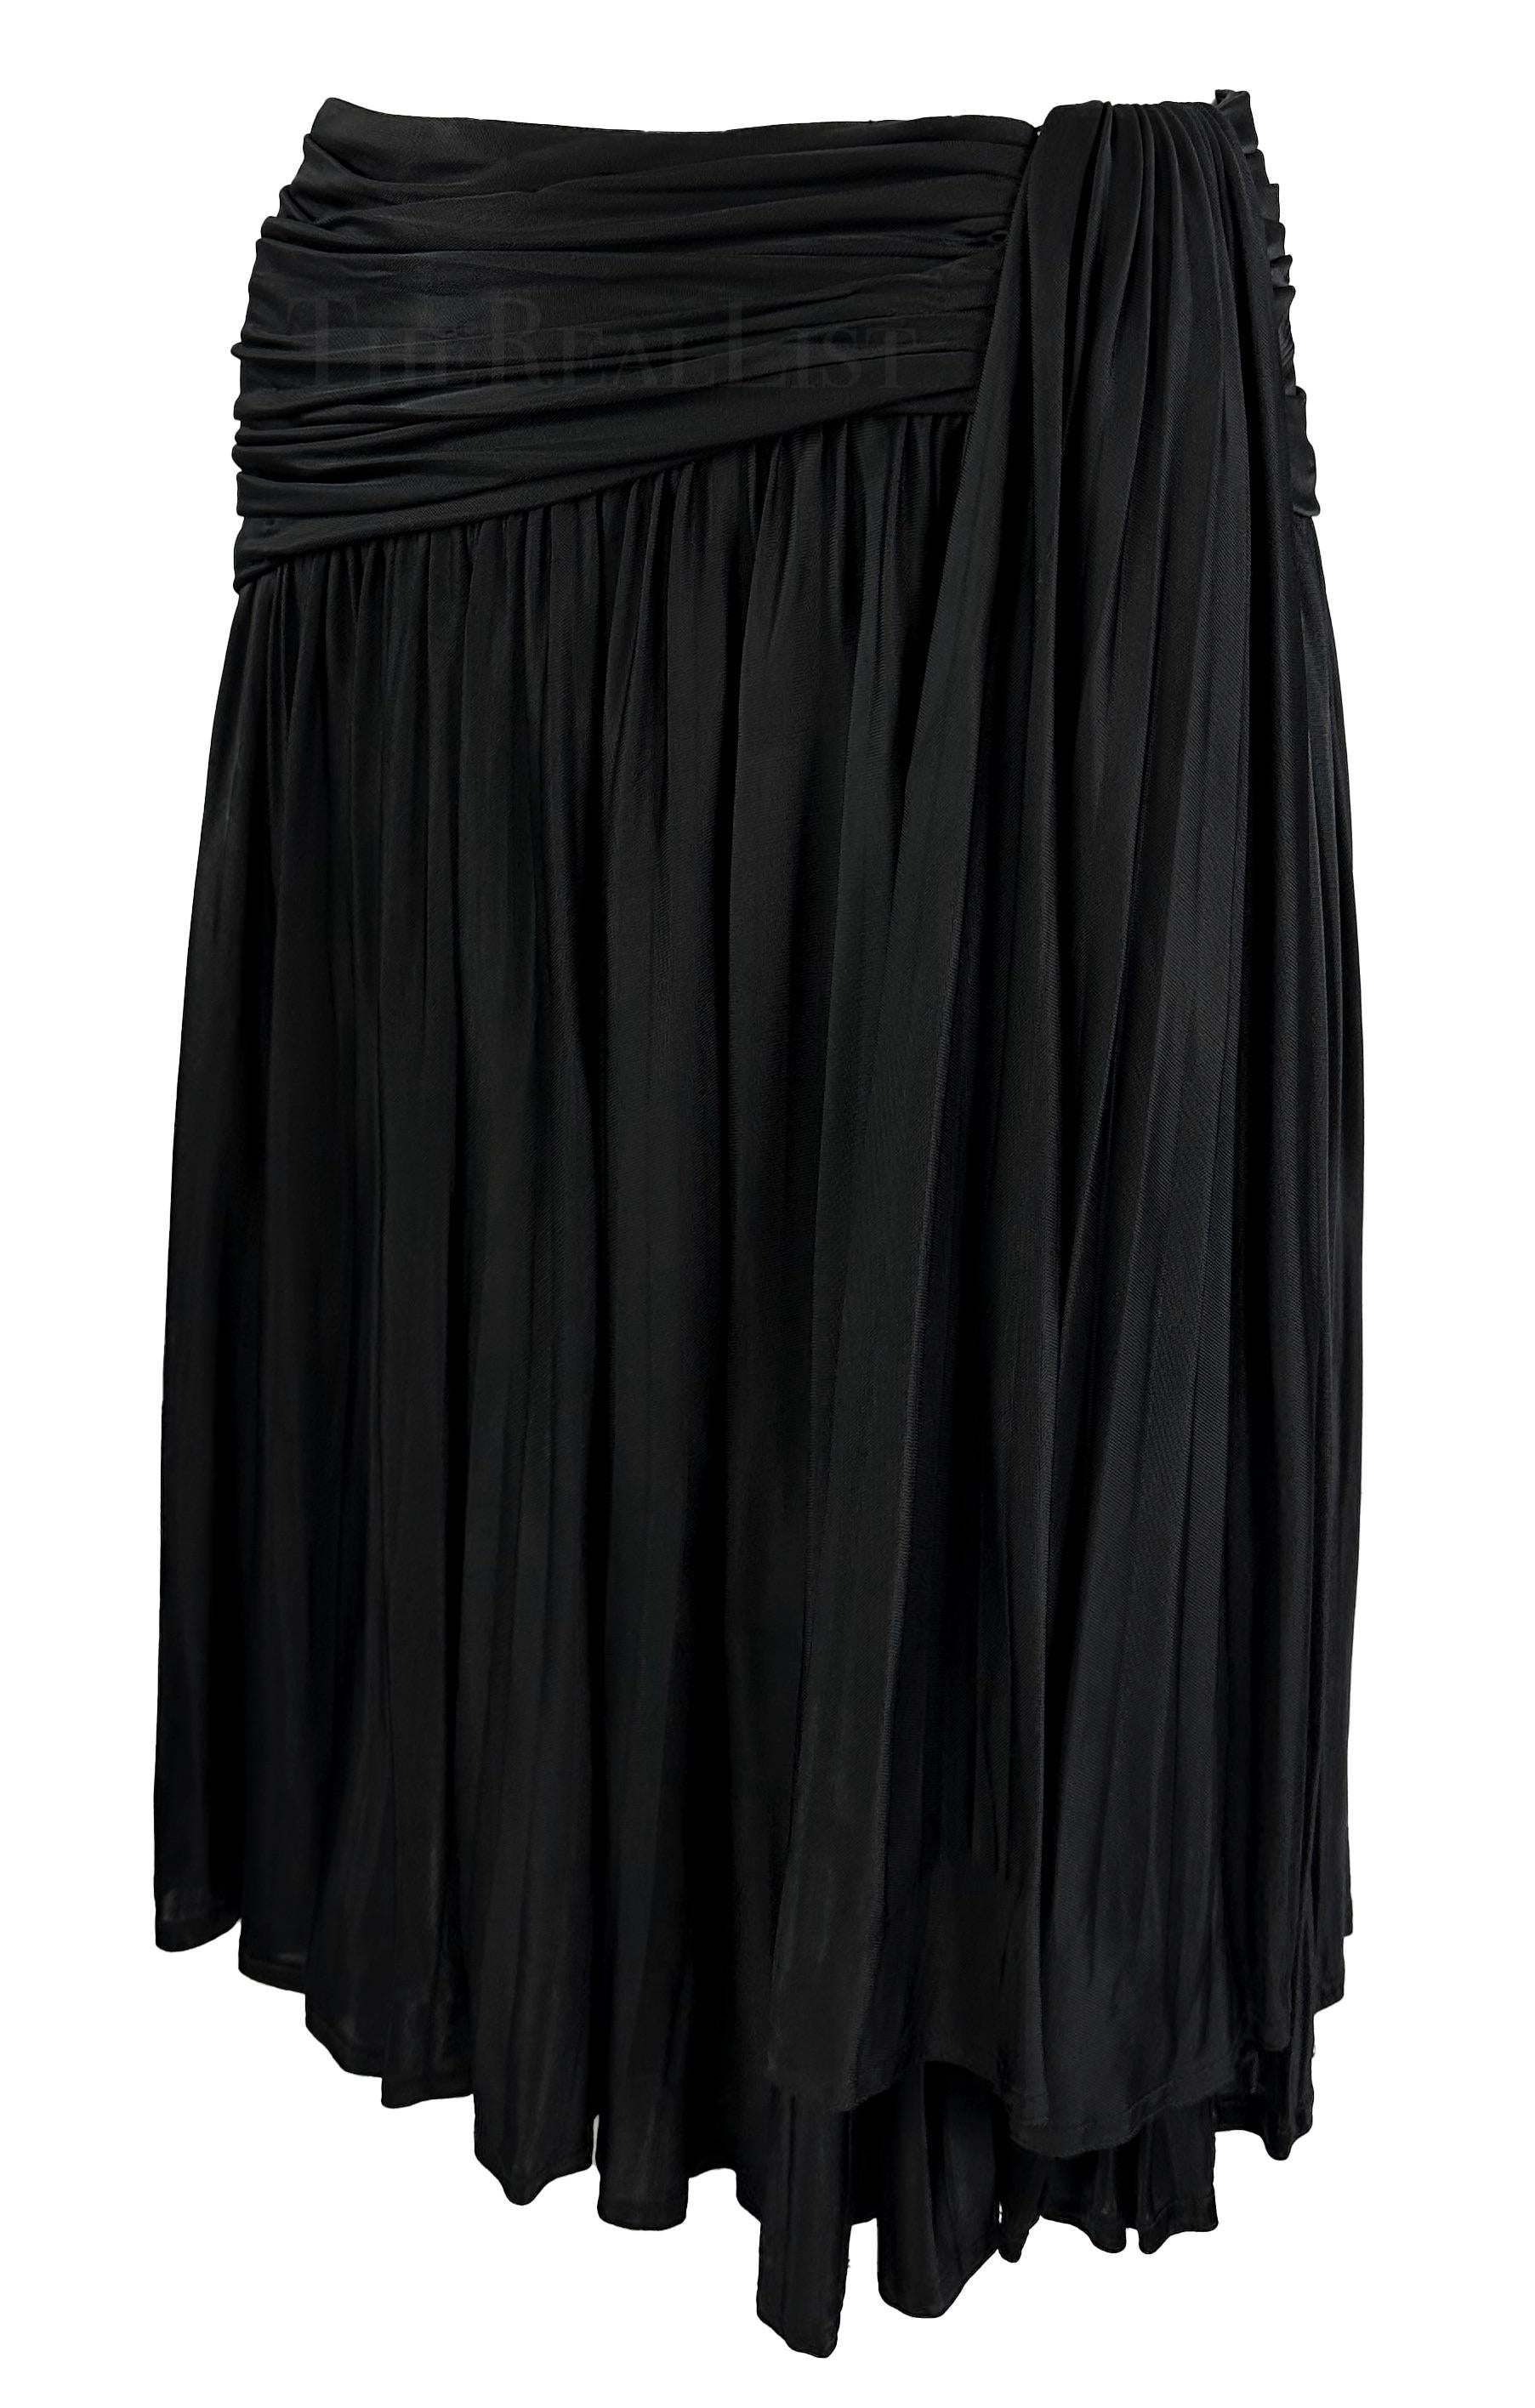 Dieser schwarze Faltenrock im Wickelstil von Gianni Versace wurde von Gianni Versace für seine Frühjahr/Sommer-Kollektion 1995 entworfen. Dieser Faltenrock mit Schlag ist mit einem asymmetrischen Wickelmuster in der Taille versehen. 

Ungefähre